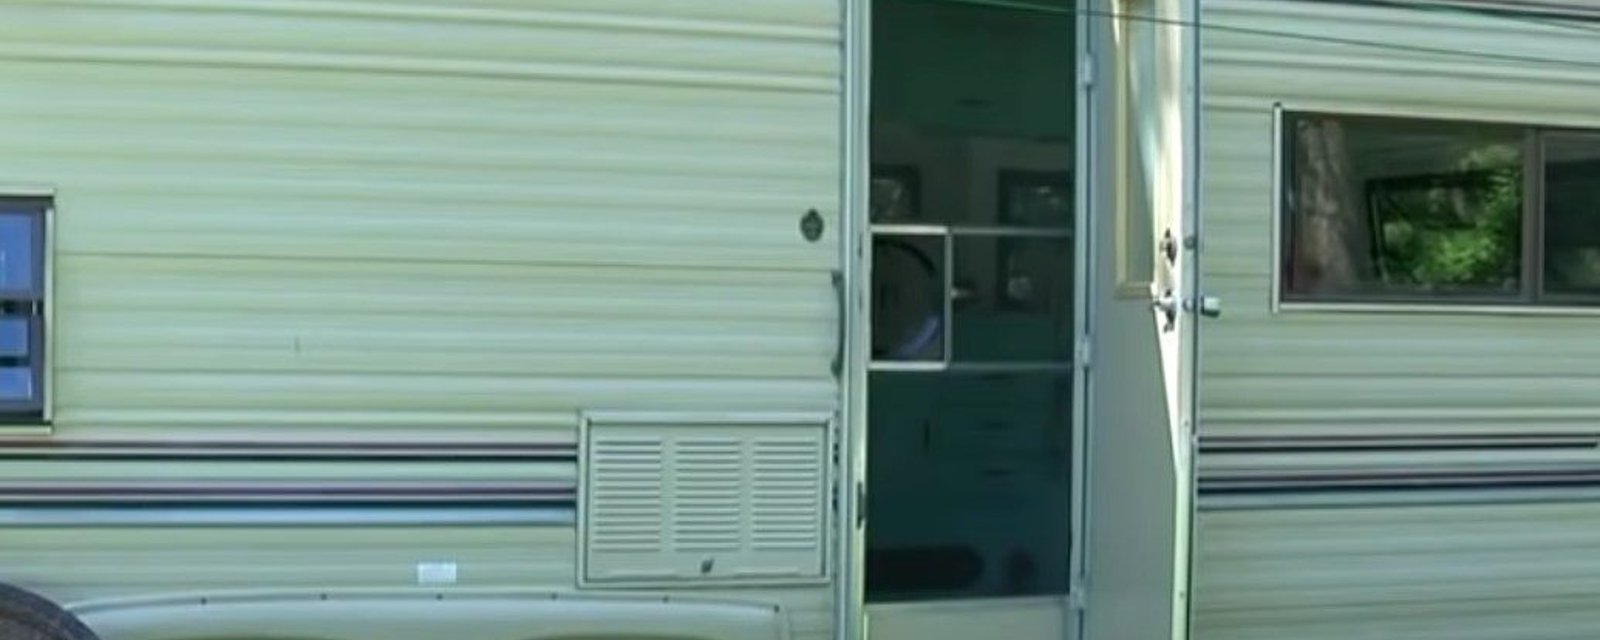 Une jeune fille achète une roulotte de 1988 pour 400 $ et la transforme en une coquette petite maison confortable